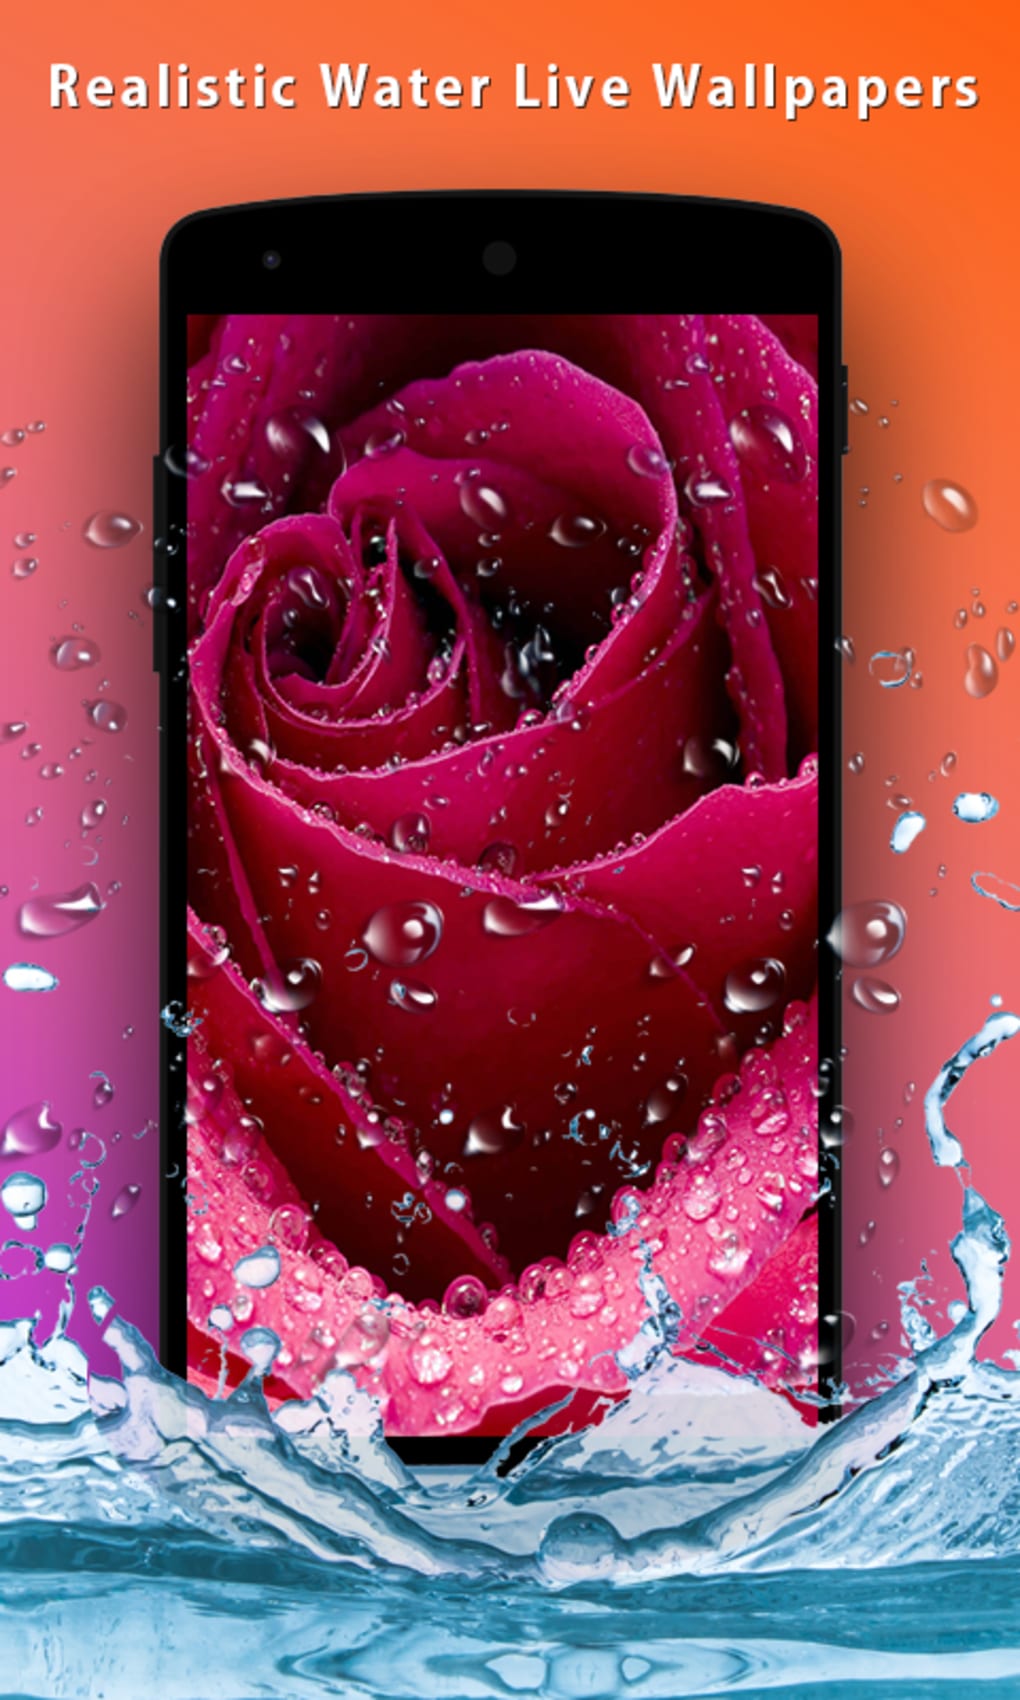 Tải 3D Rose Live Wallpaper cho Android, Ứng dụng hình nền động 3D cho